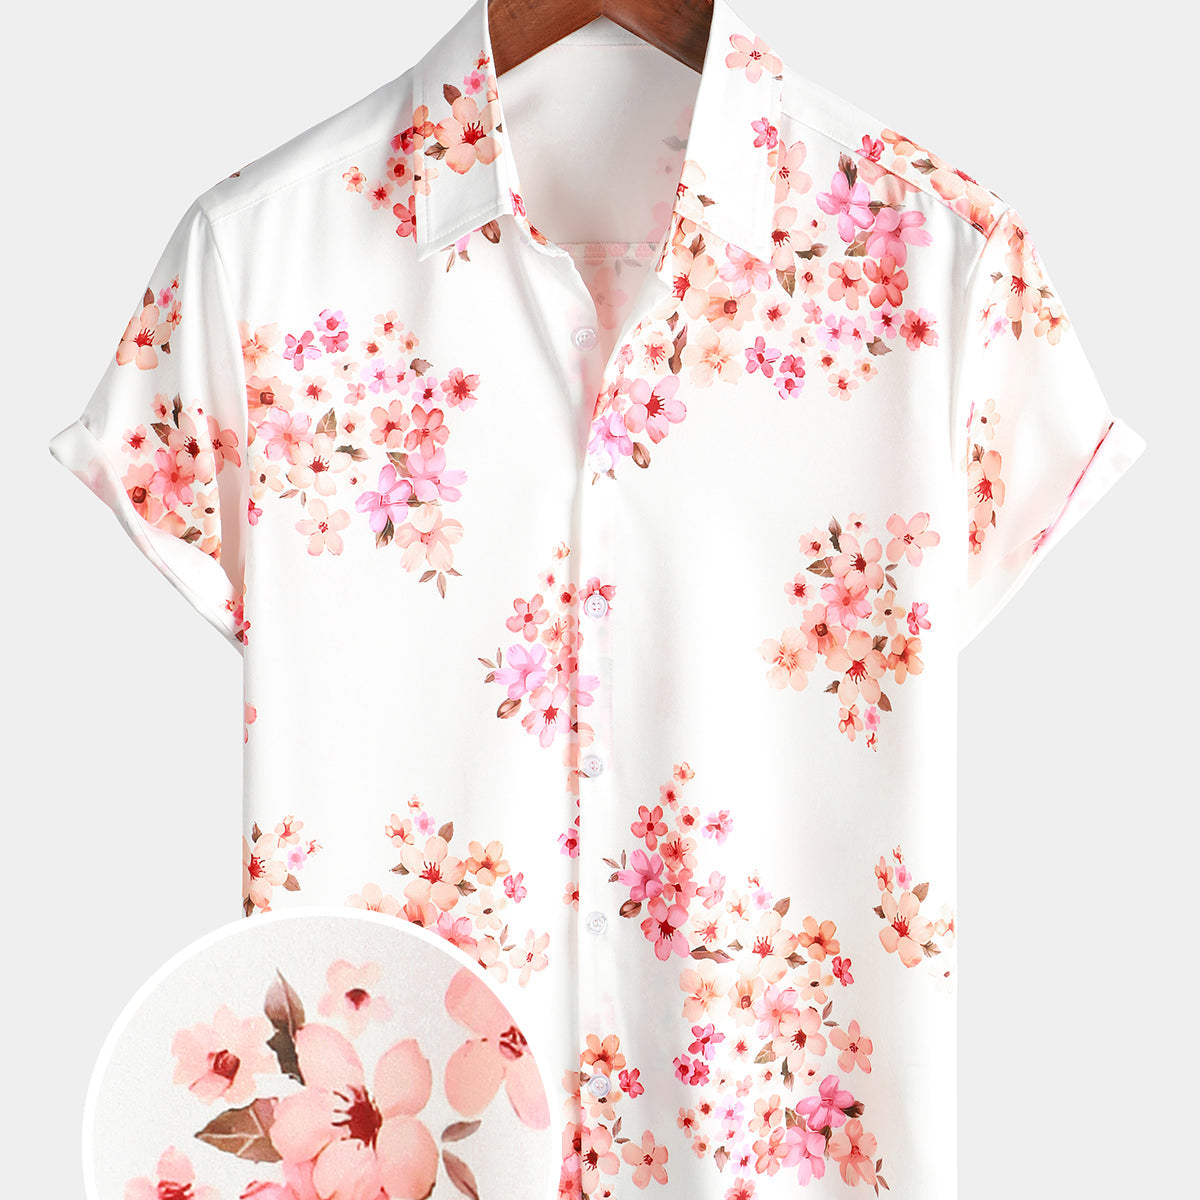 Camisa hawaiana con botones y flores de cerezo rosa de manga corta con estampado floral para hombre